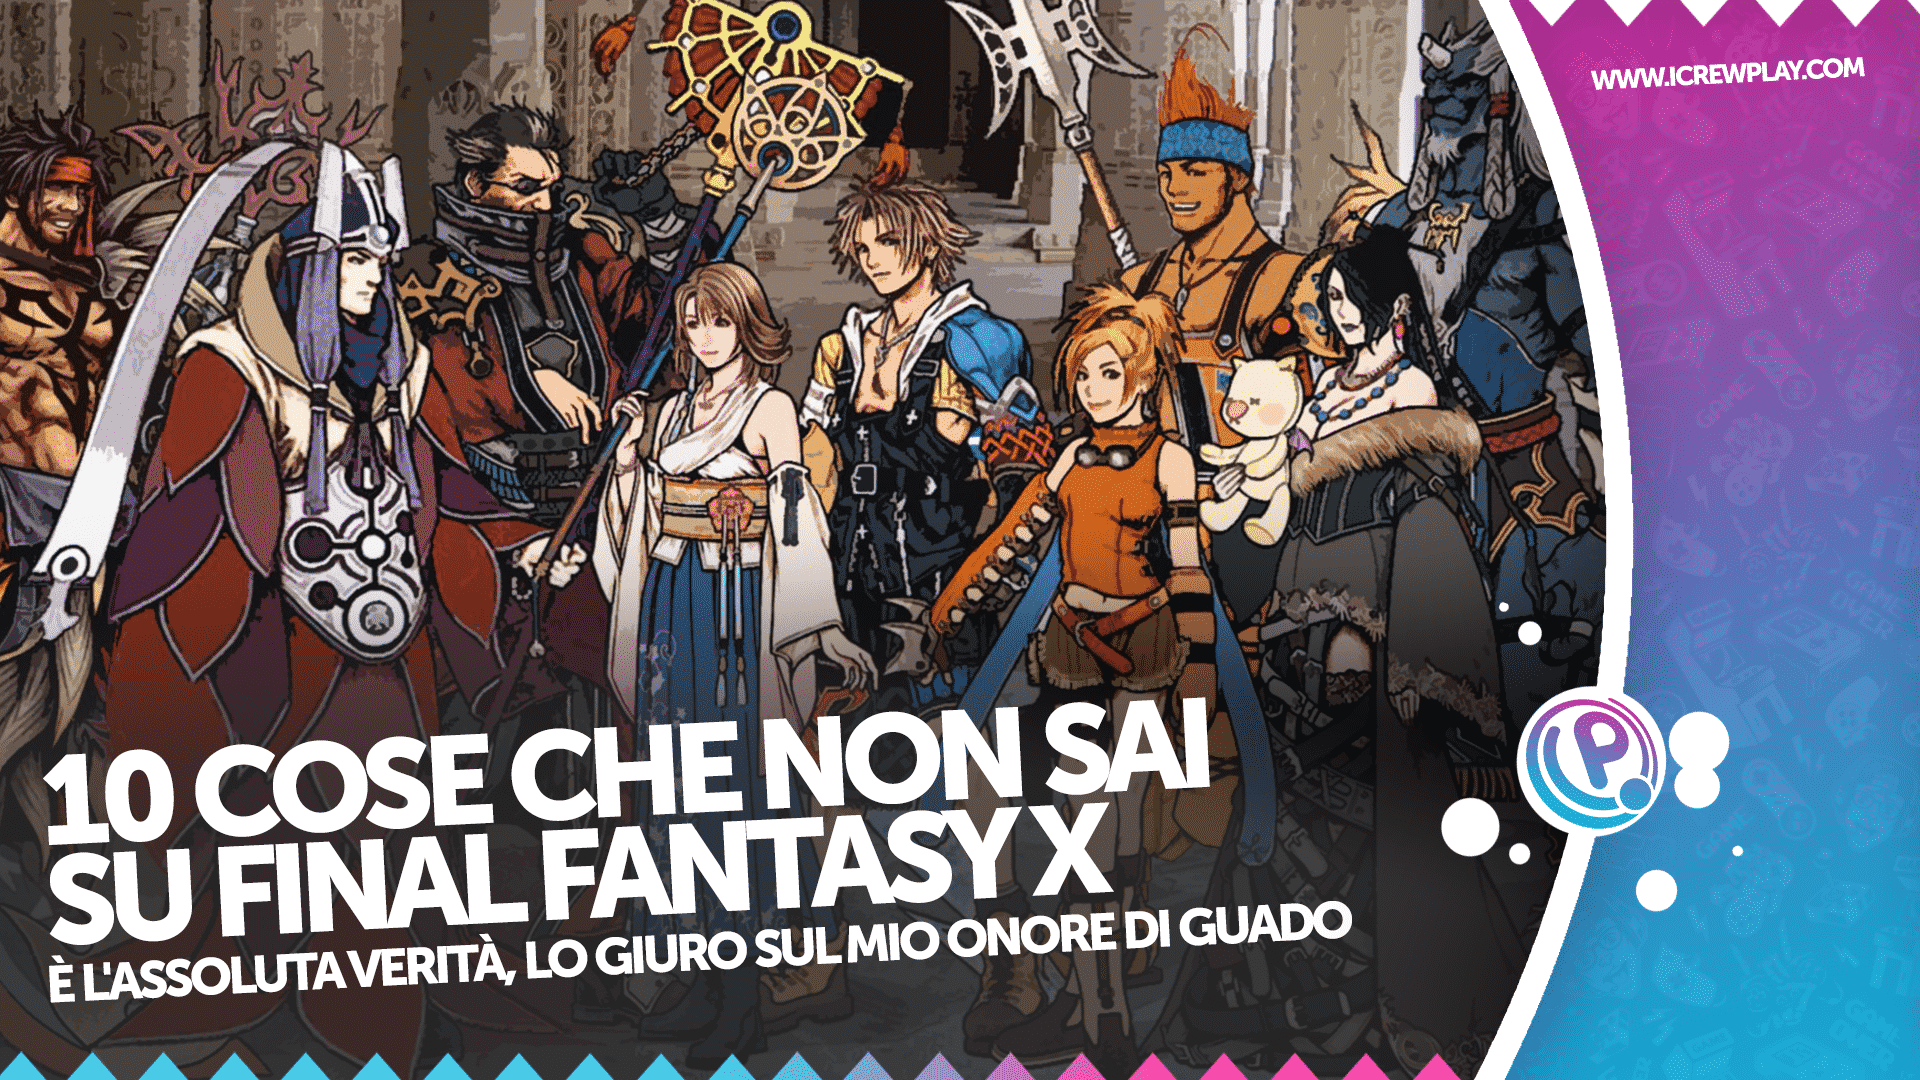 10 cose che non sai su Final Fantasy X 2